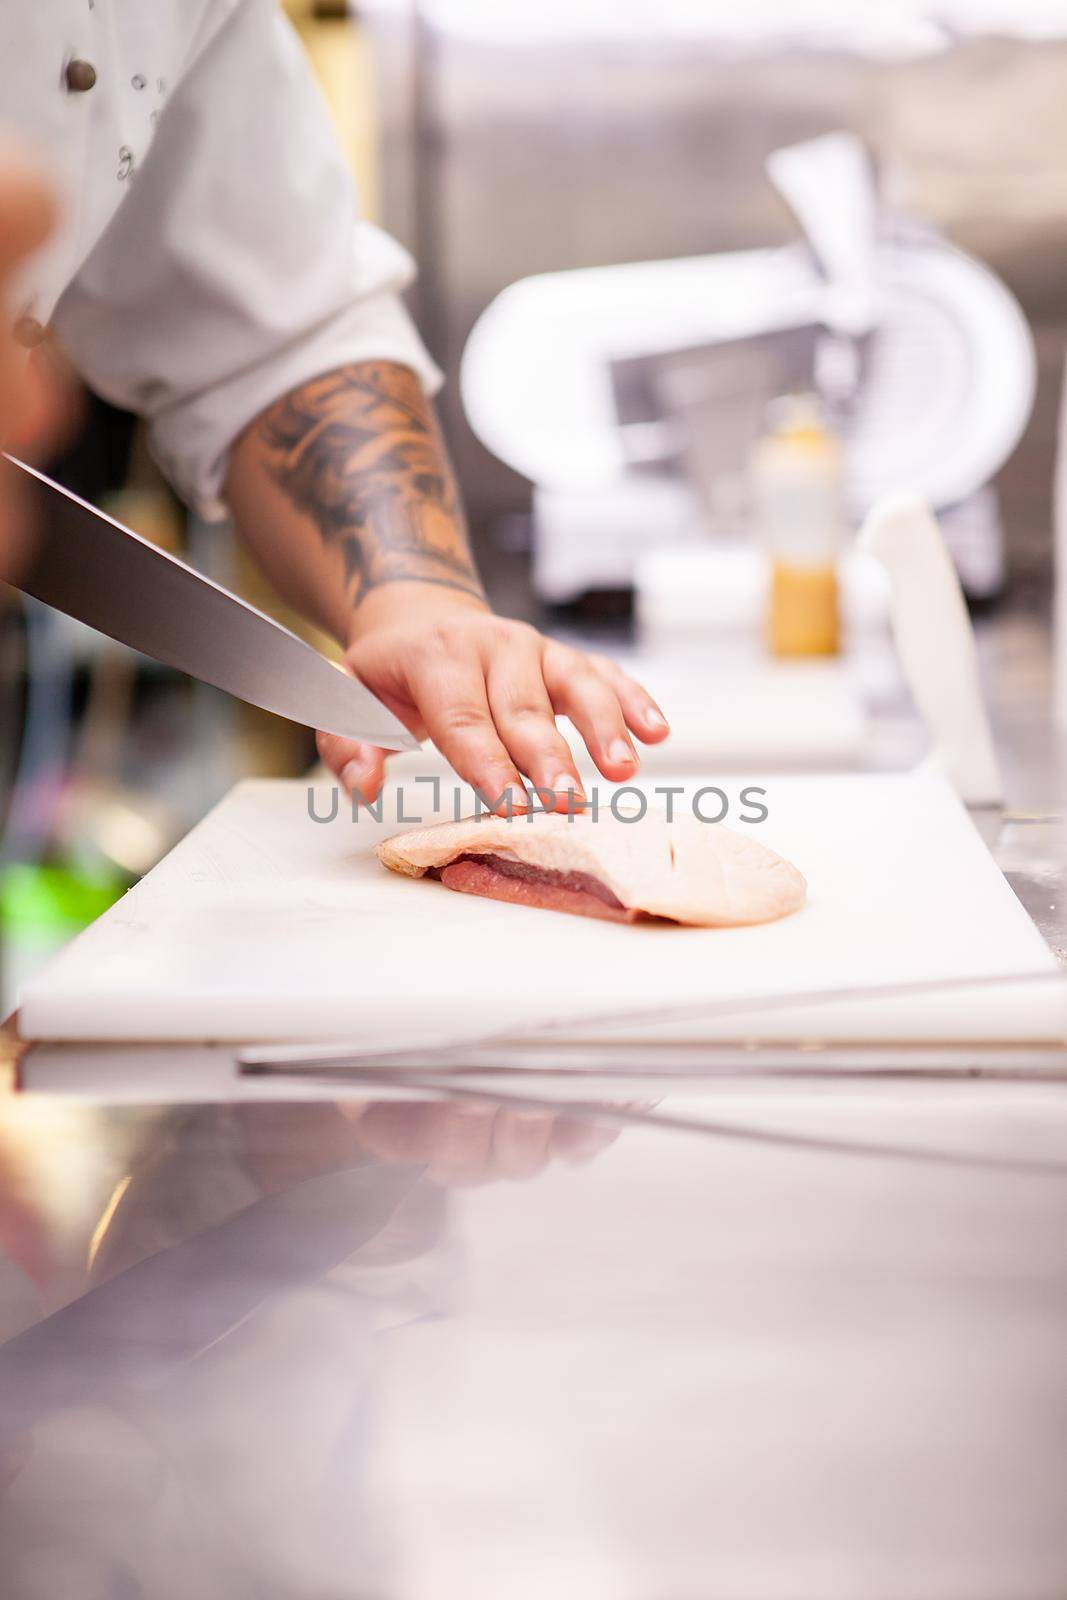 Chef slicing duck breast in kitchen restaurant. Meat preparation